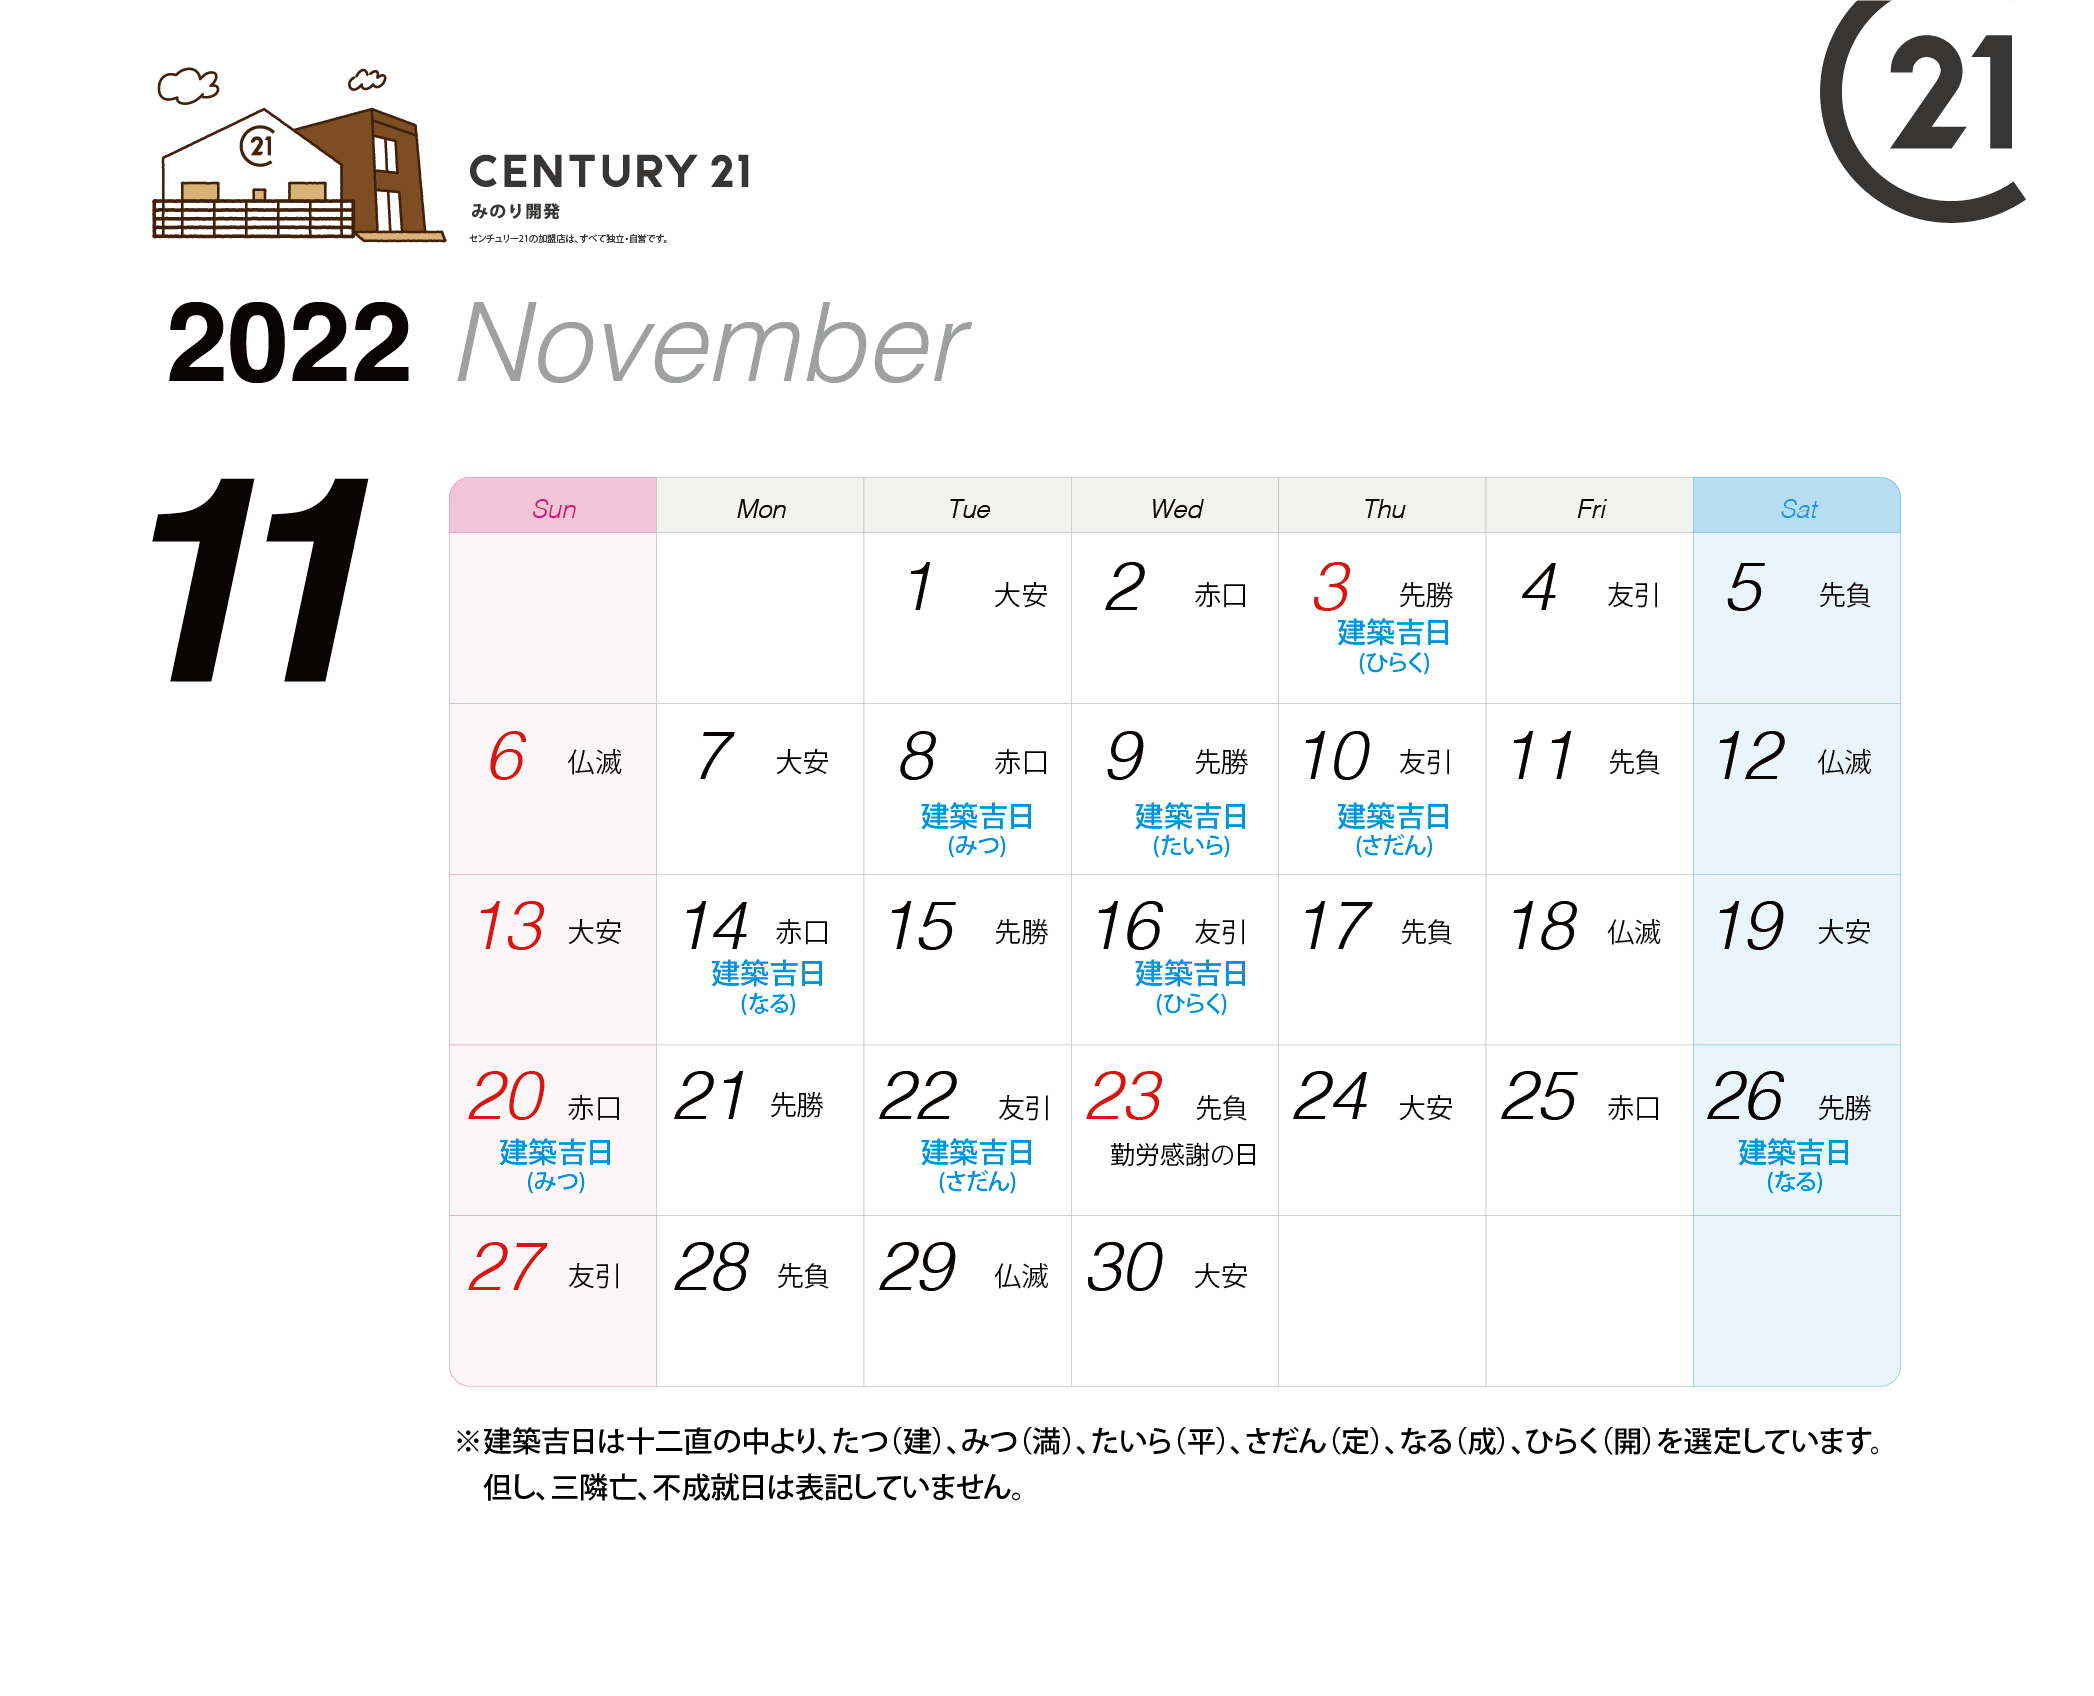 建築吉日カレンダー22年11月 12月 センチュリー21 みのり開発 松戸市や柏市の不動産 注文住宅 土地活用 相続のご相談